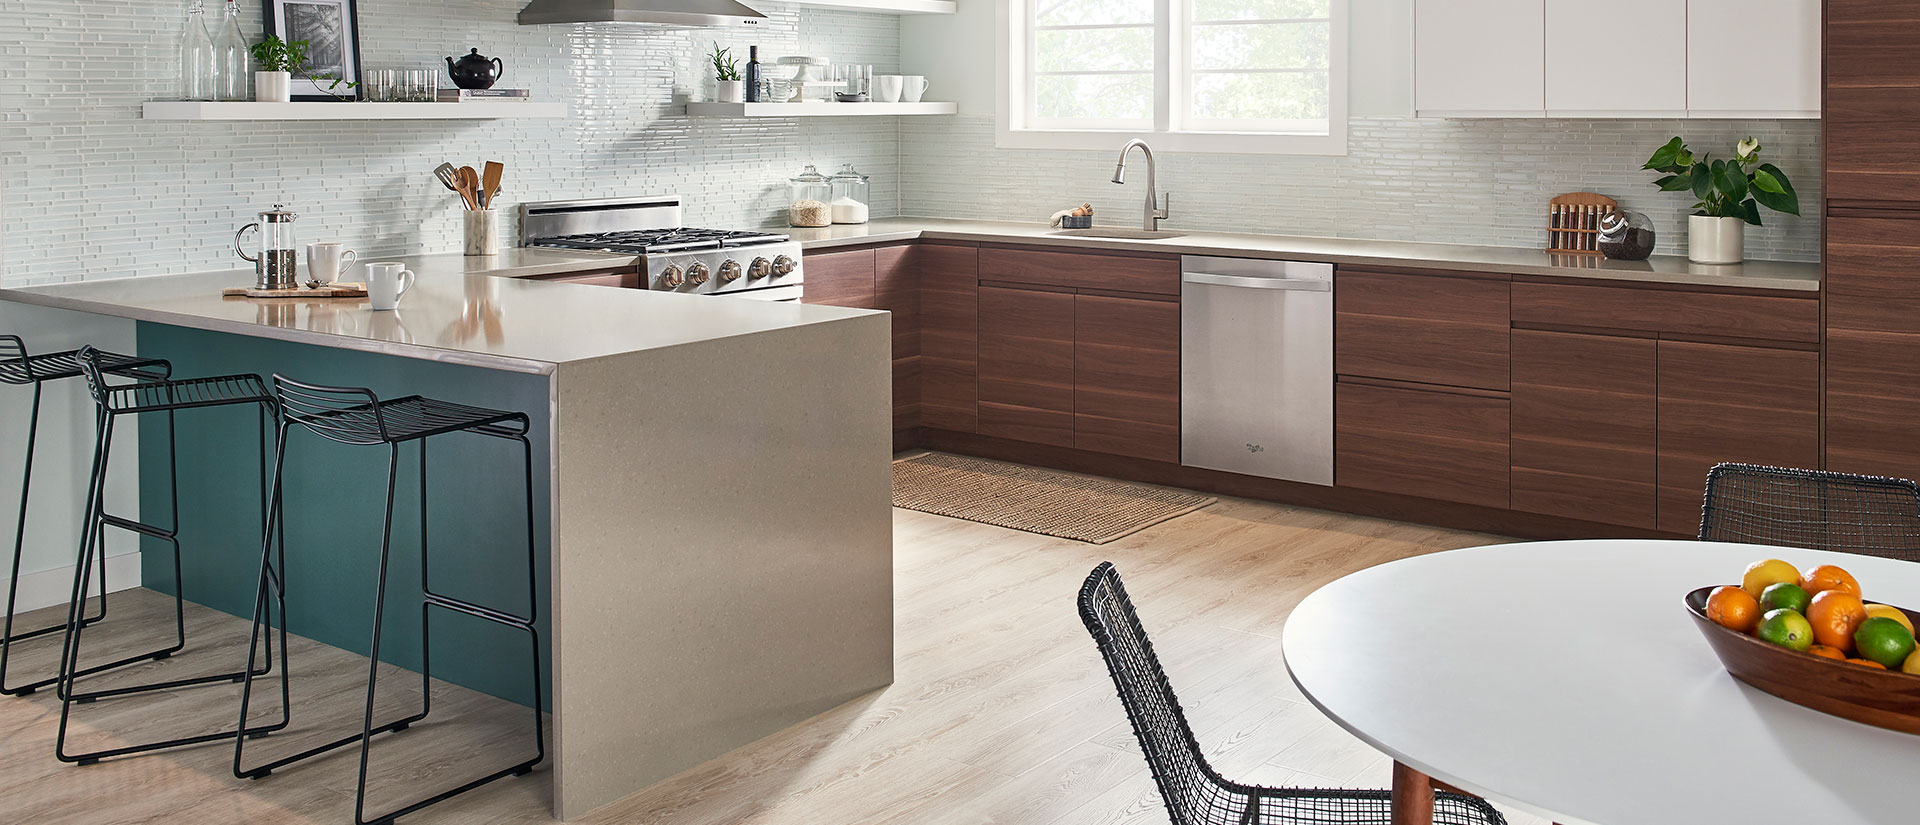 Concerto Quartz countertop in a modern and minimalist kitchen